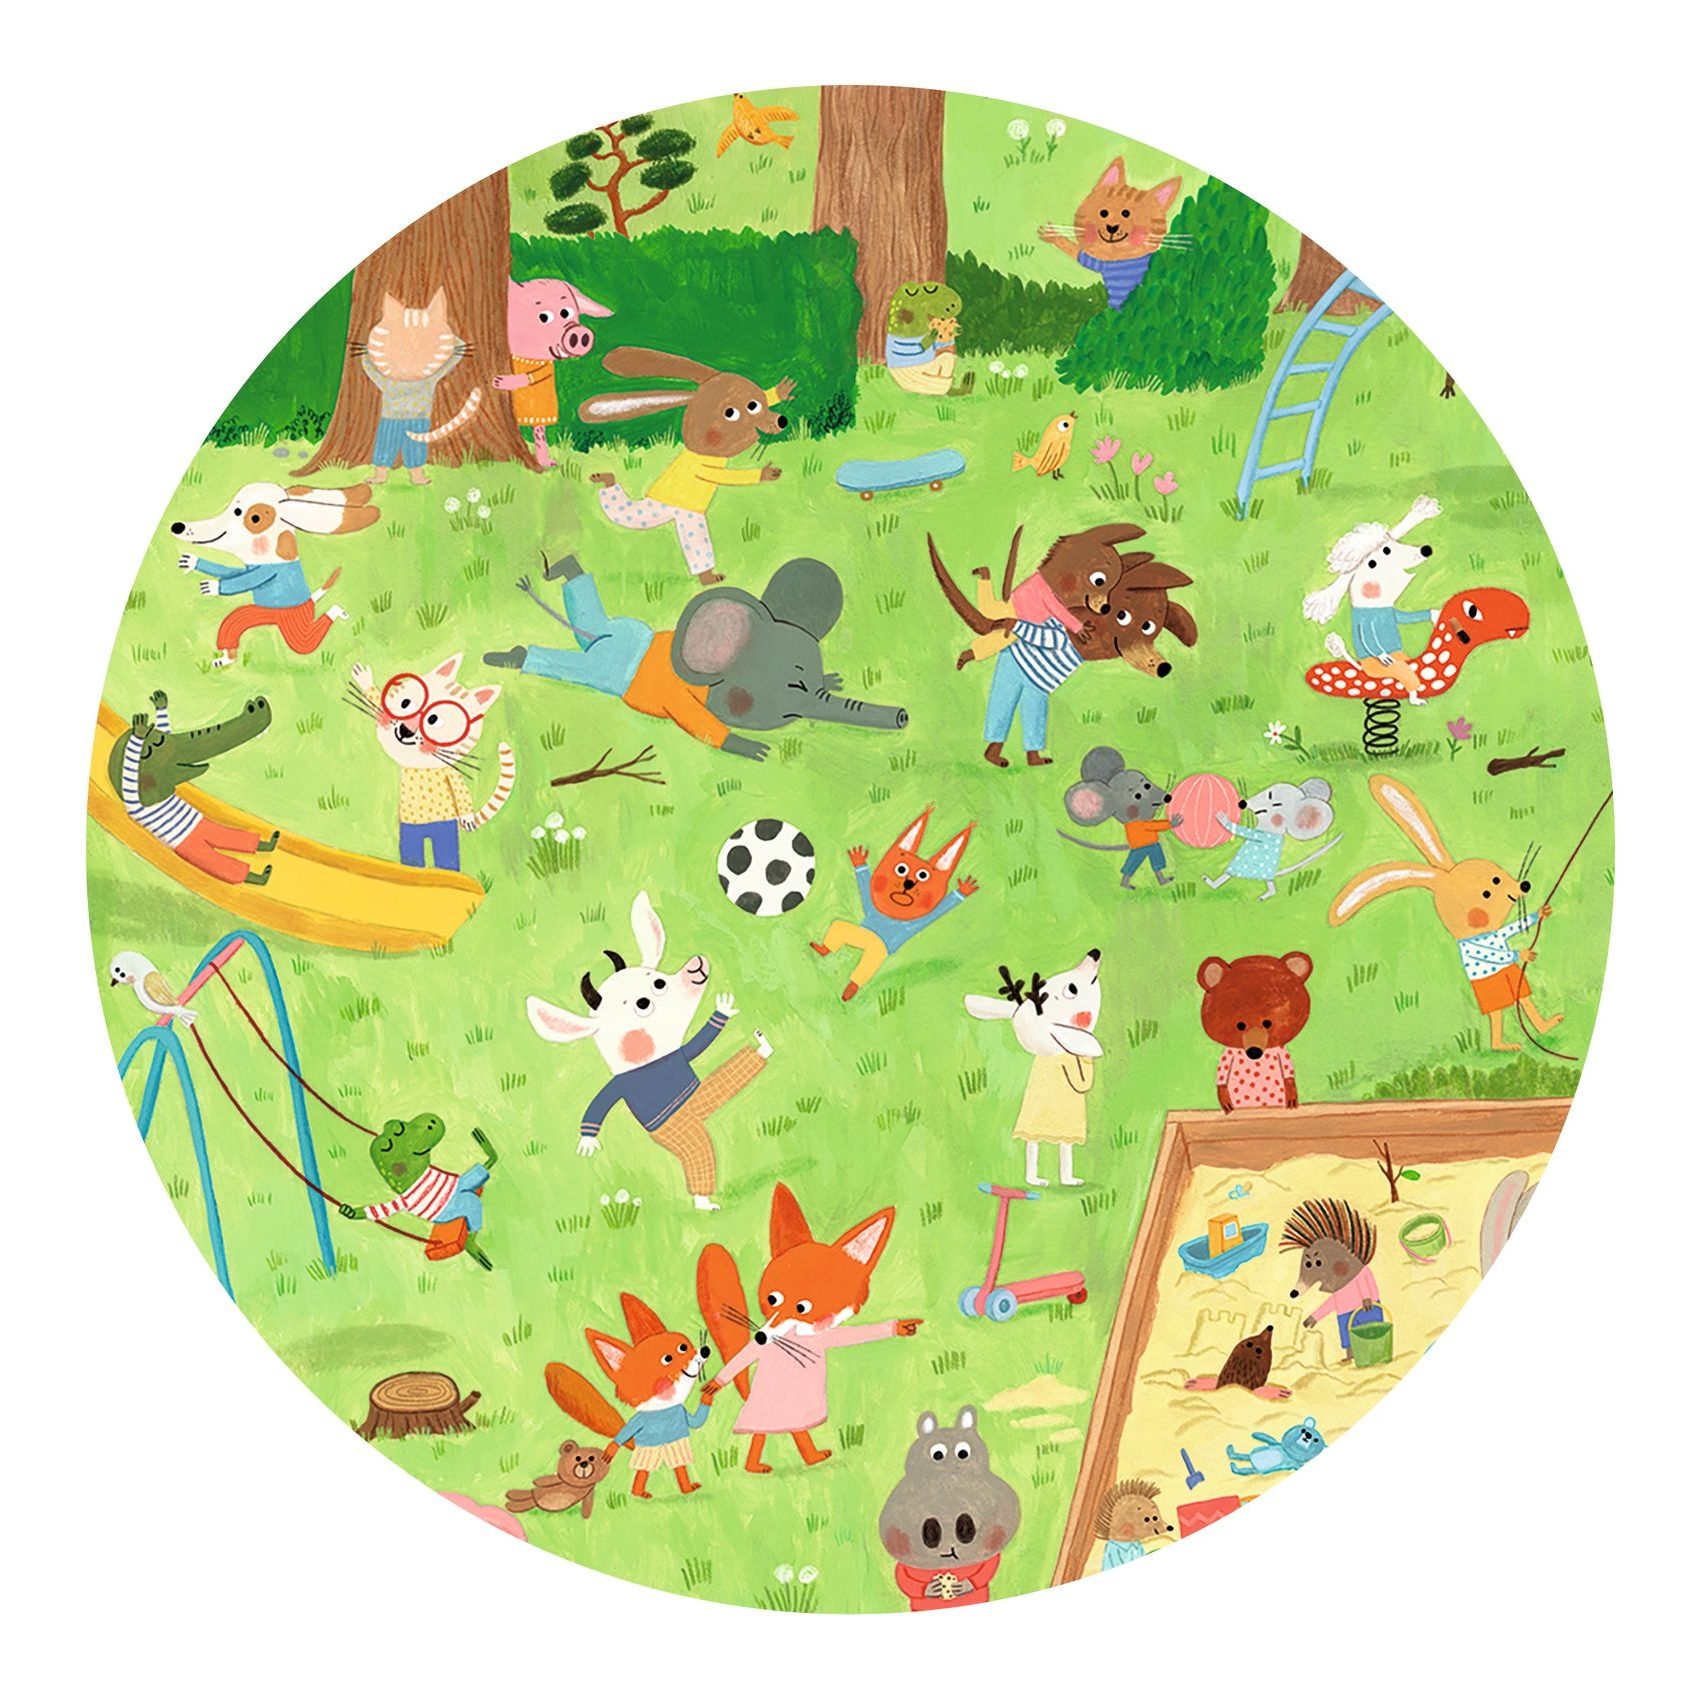 Megfigyeltető puzzle - Kisbarátok a kertben, 35 db-os - Little friends' garden - 35 pcs - FSC MIX - 2